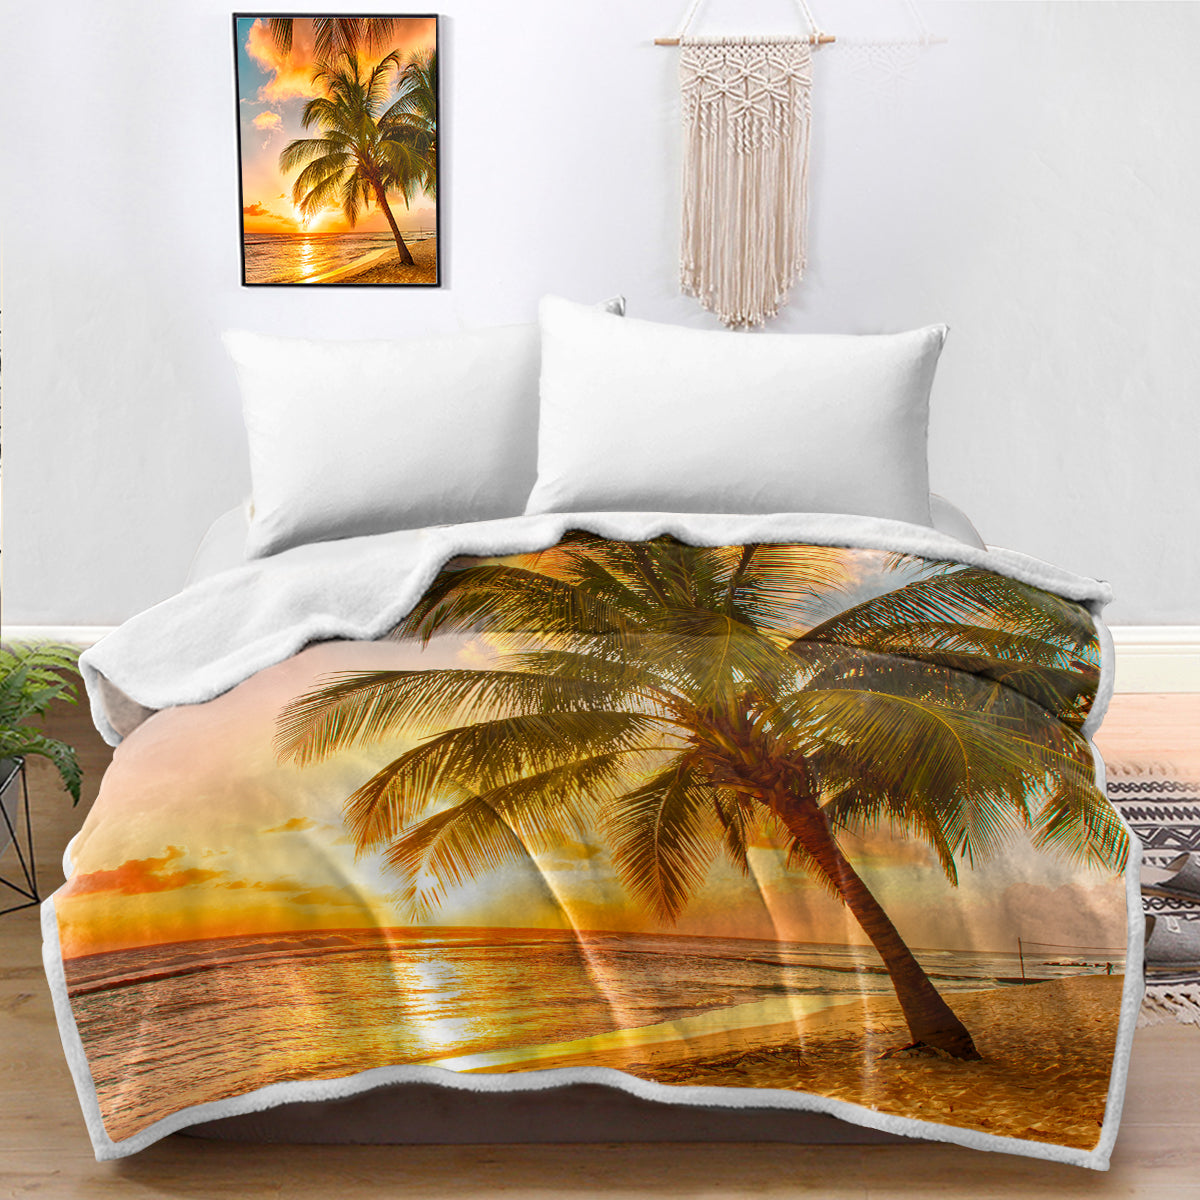 Barbados Bedspread Blanket